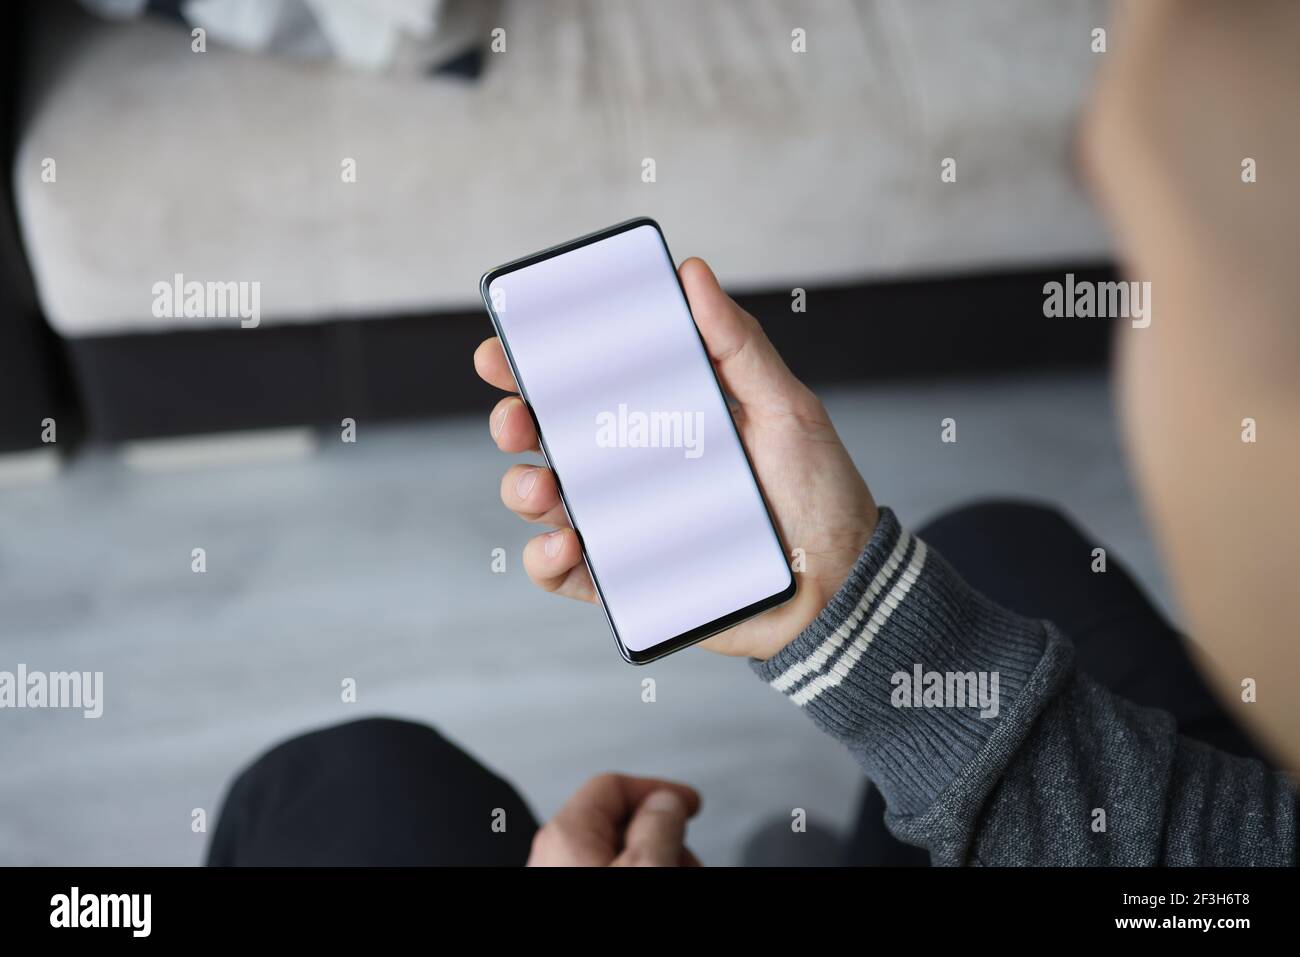 L'uomo tiene lo smartphone con lo schermo bianco in mano Foto Stock